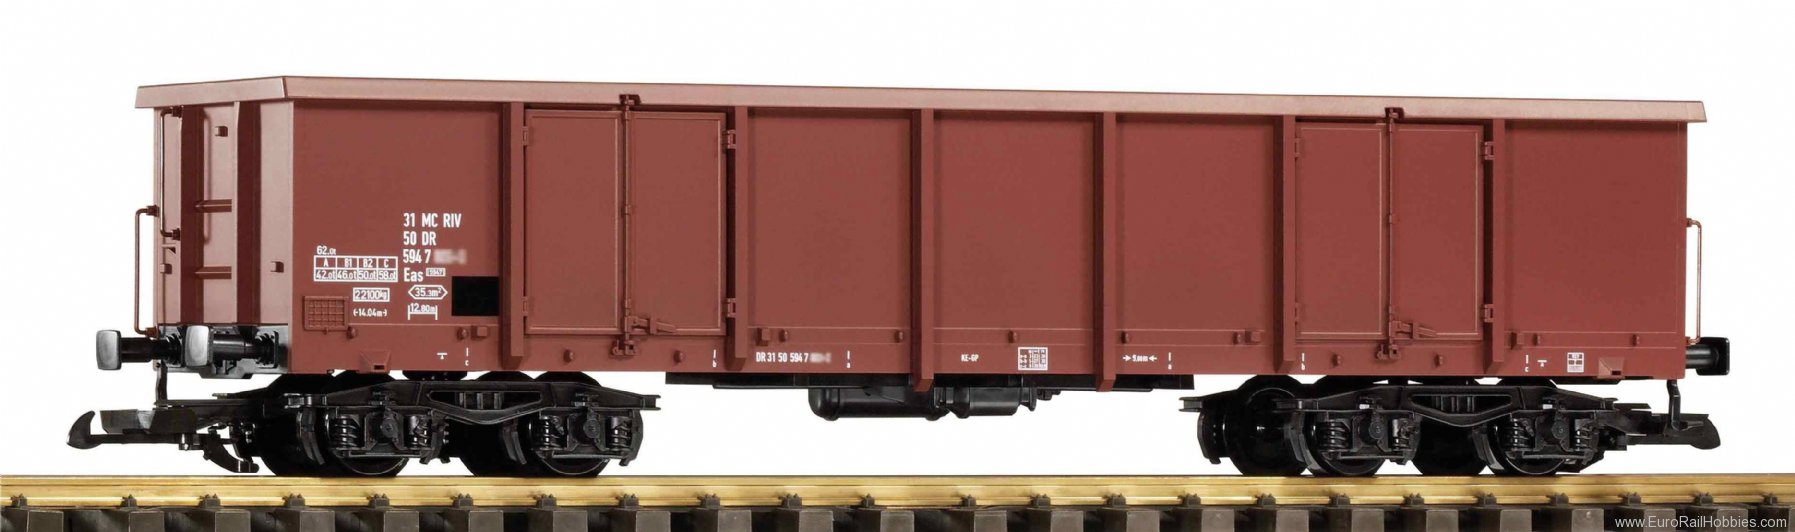 Piko 37018 G Open freight car Eaos DR IV